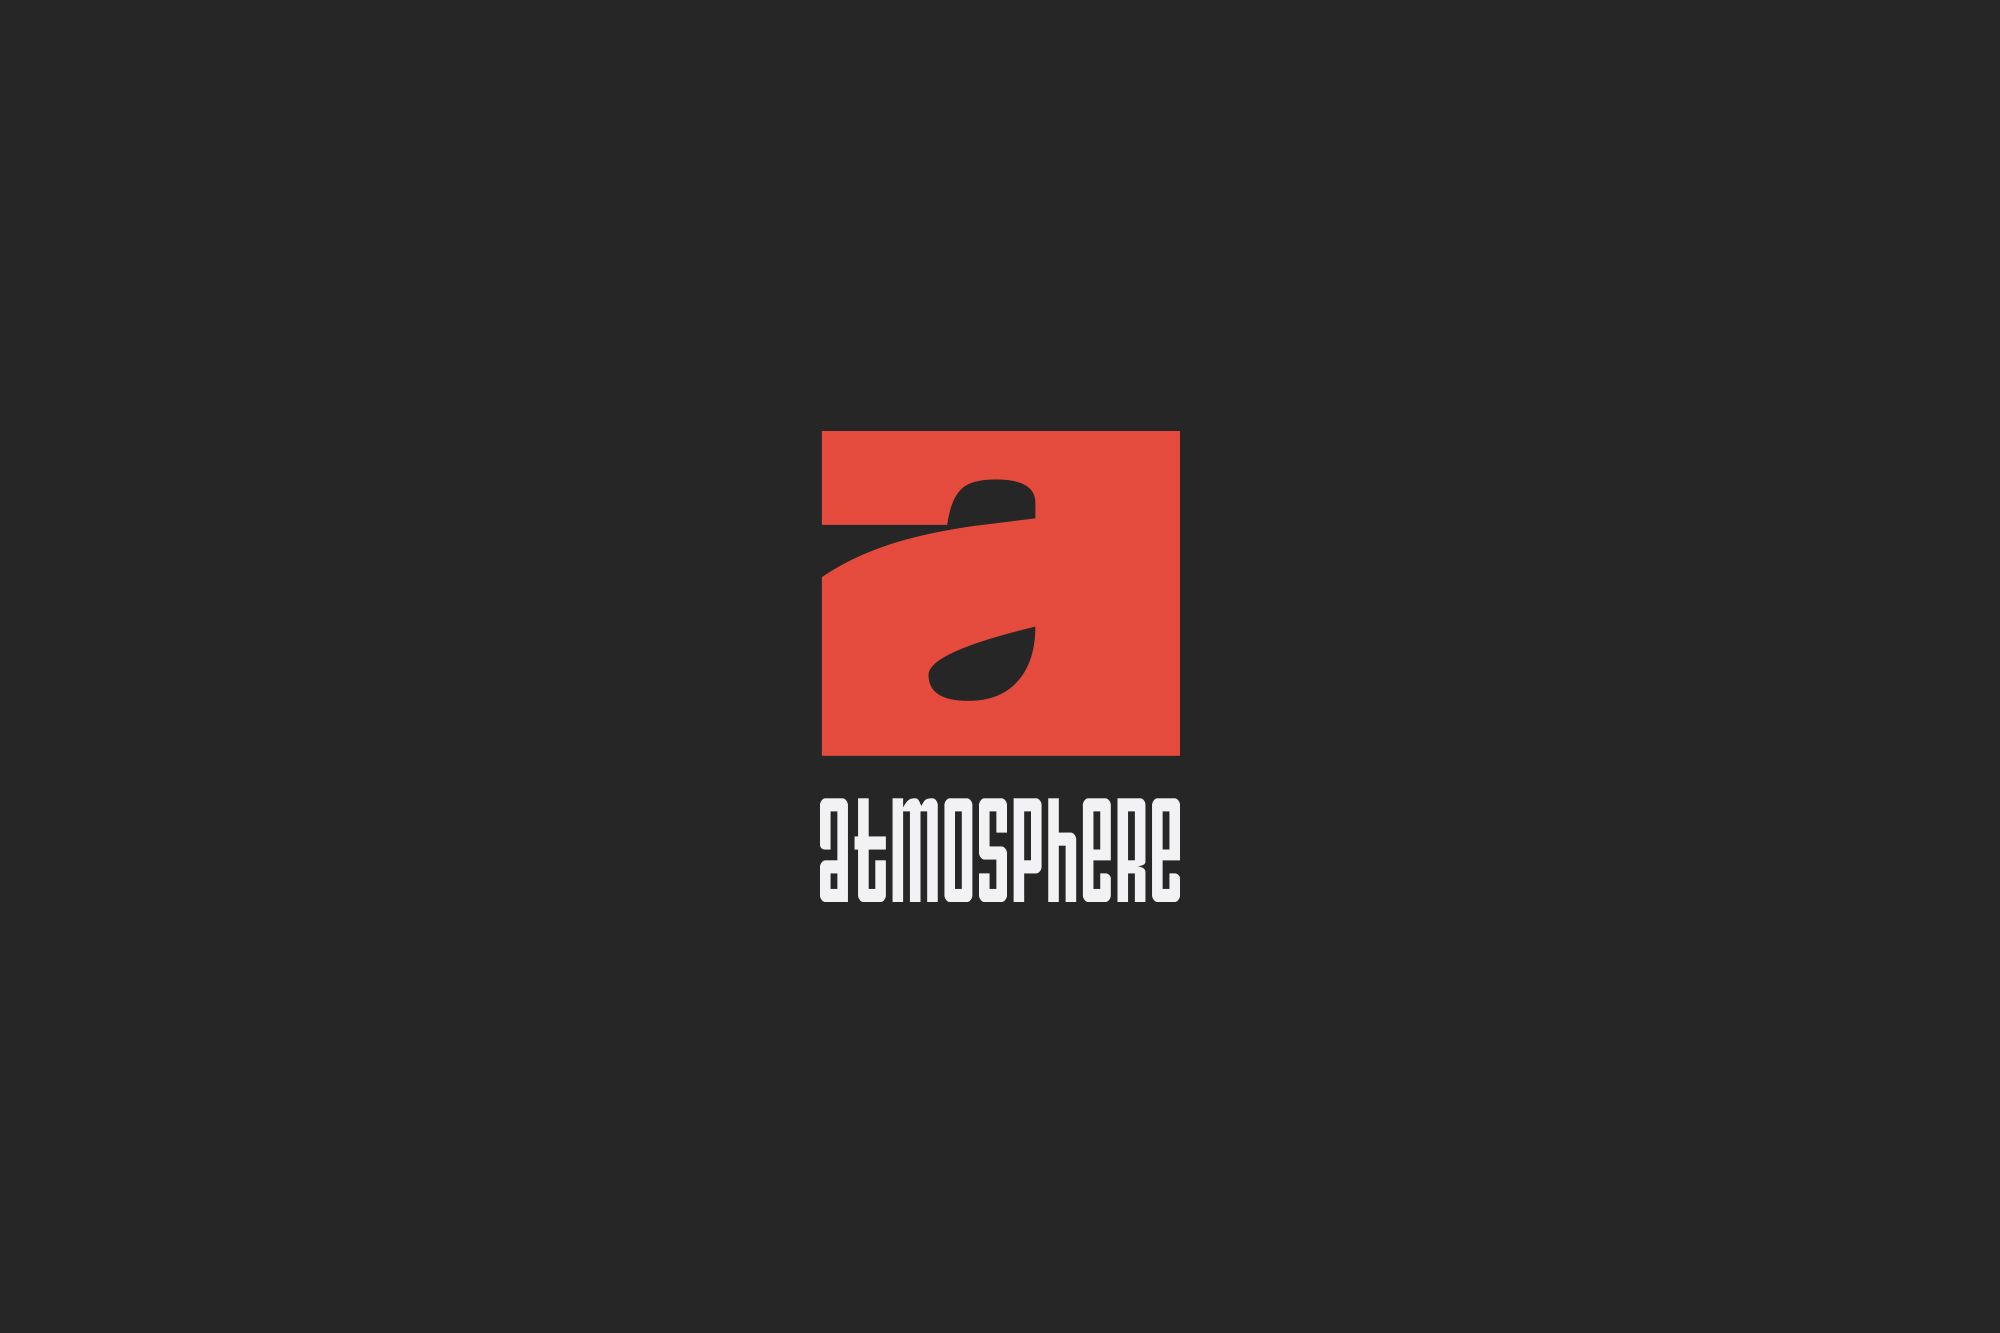 Лого и фирменный стиль для Атмосфера (Аtmosphere) - дизайнер Teriyakki